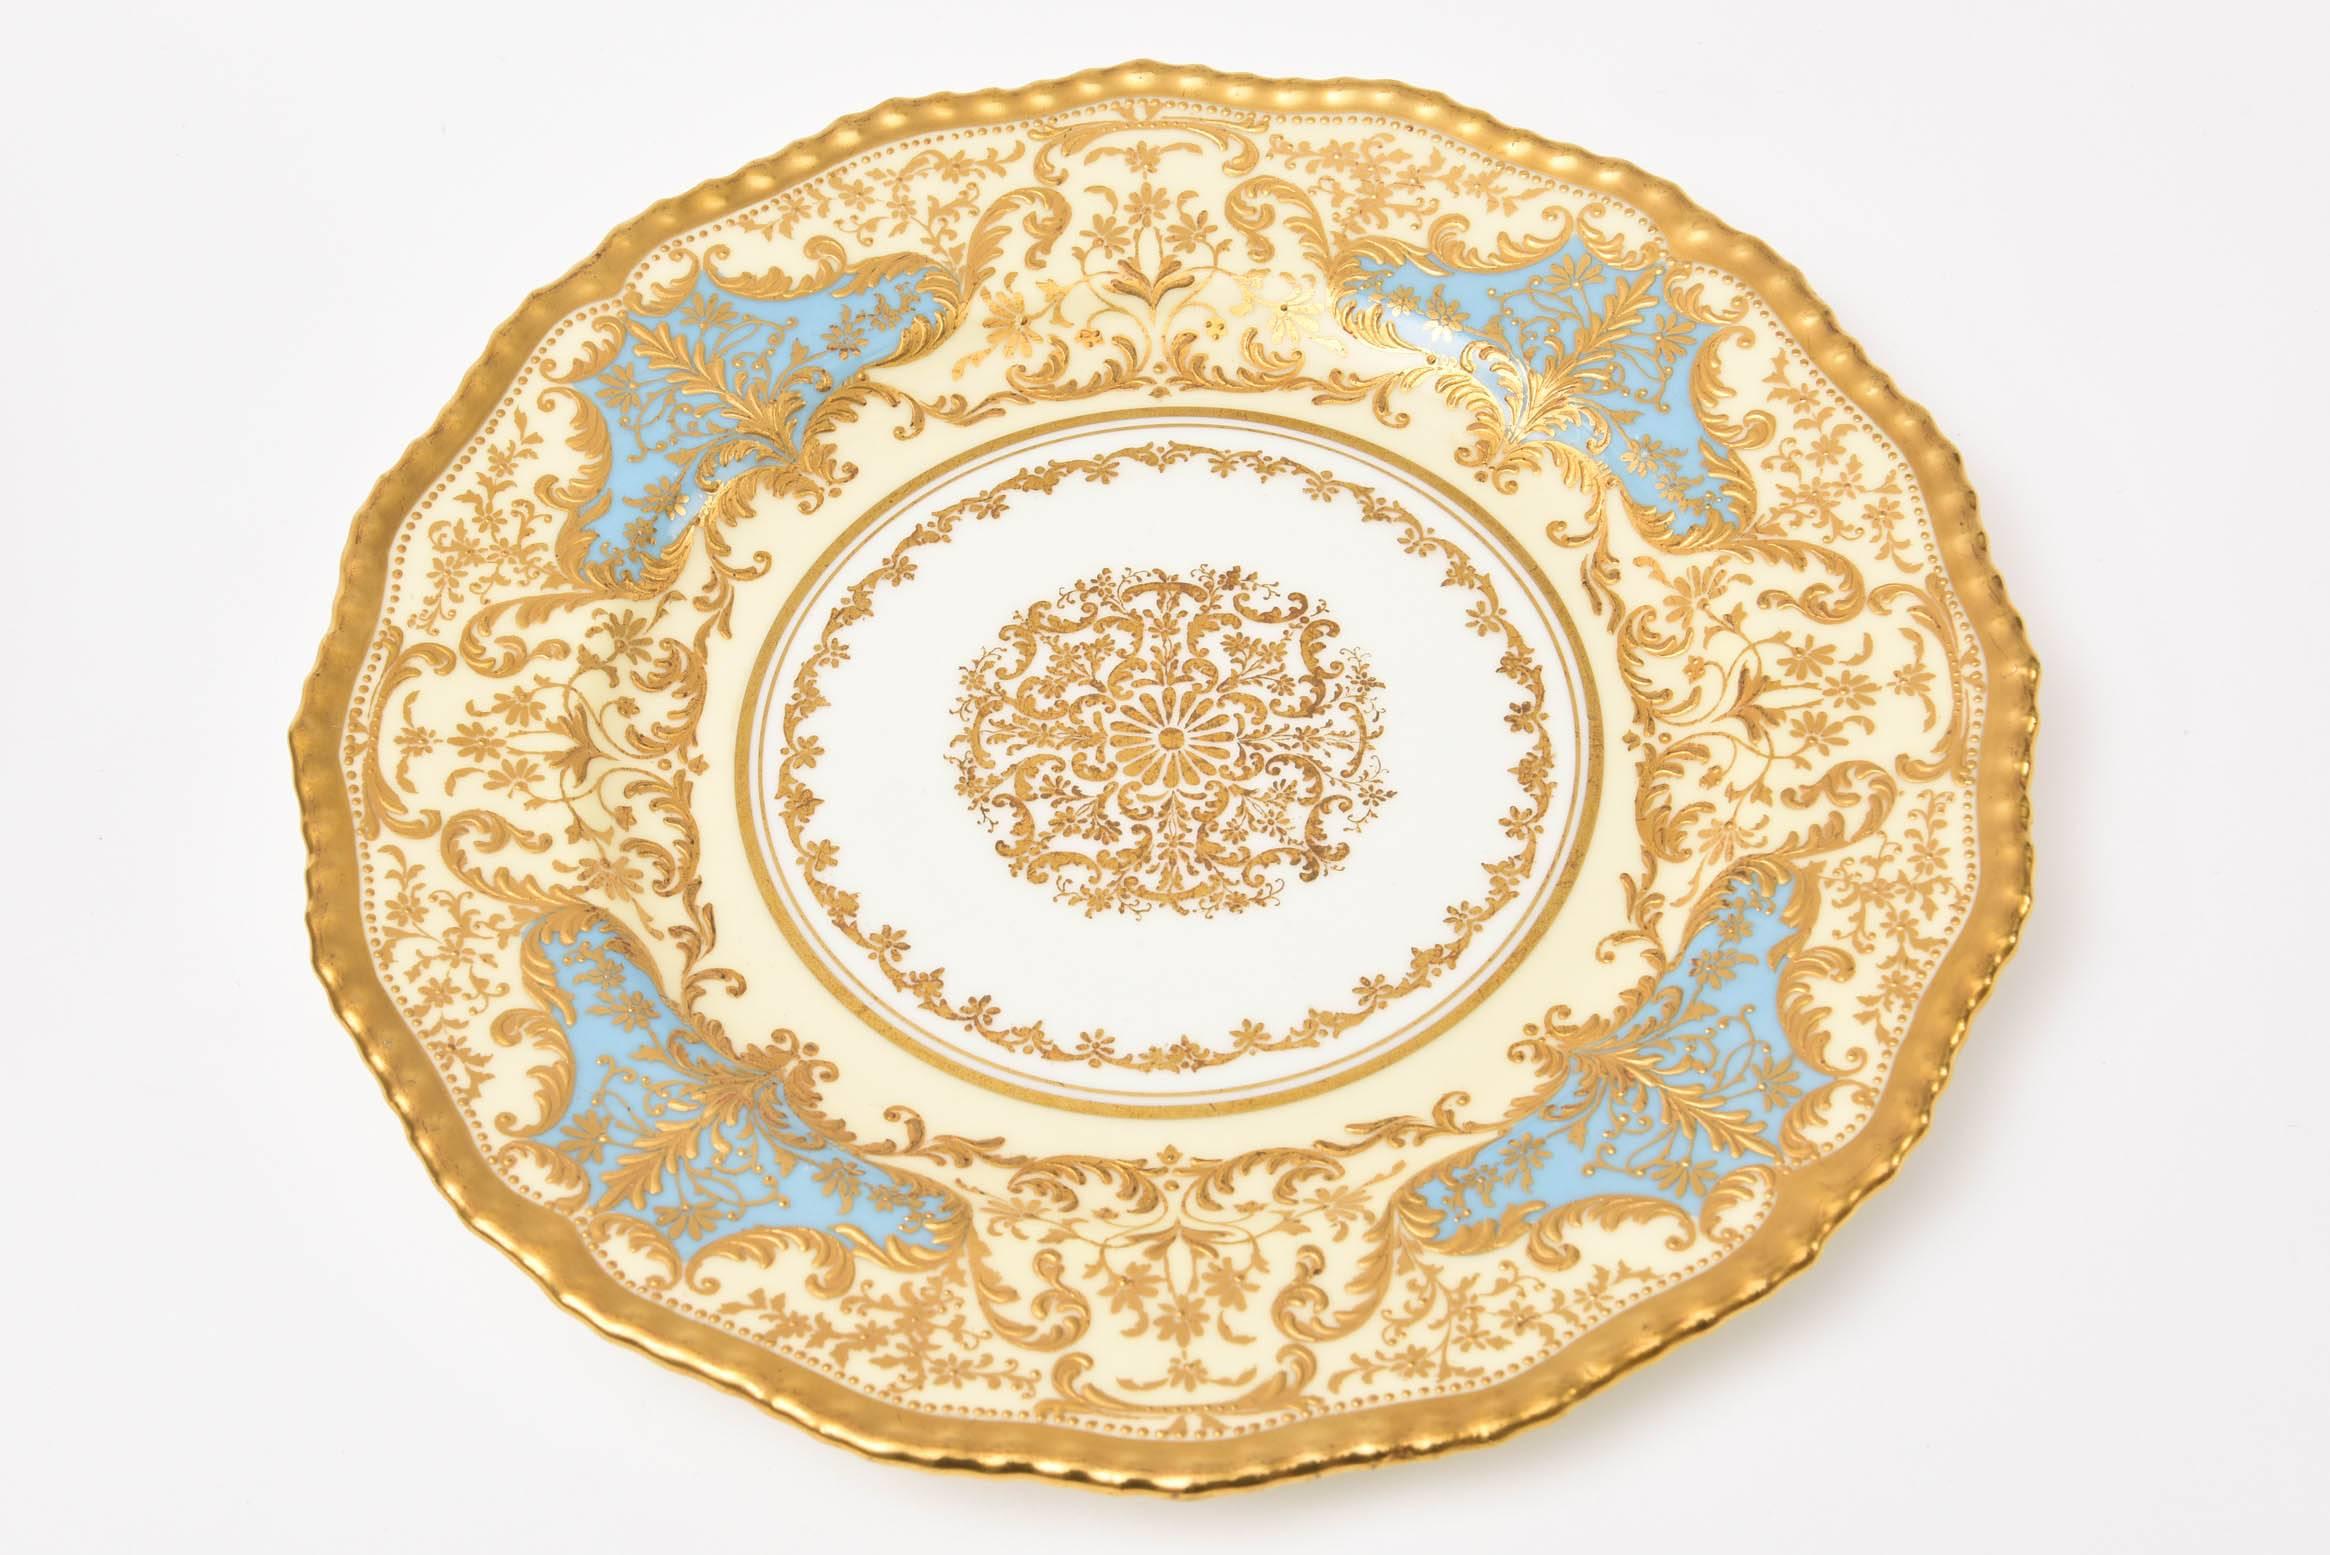 Gold 12 Exquisite Turquoise Gilt Encrusted Dessert Plates, Antique English circa 1910